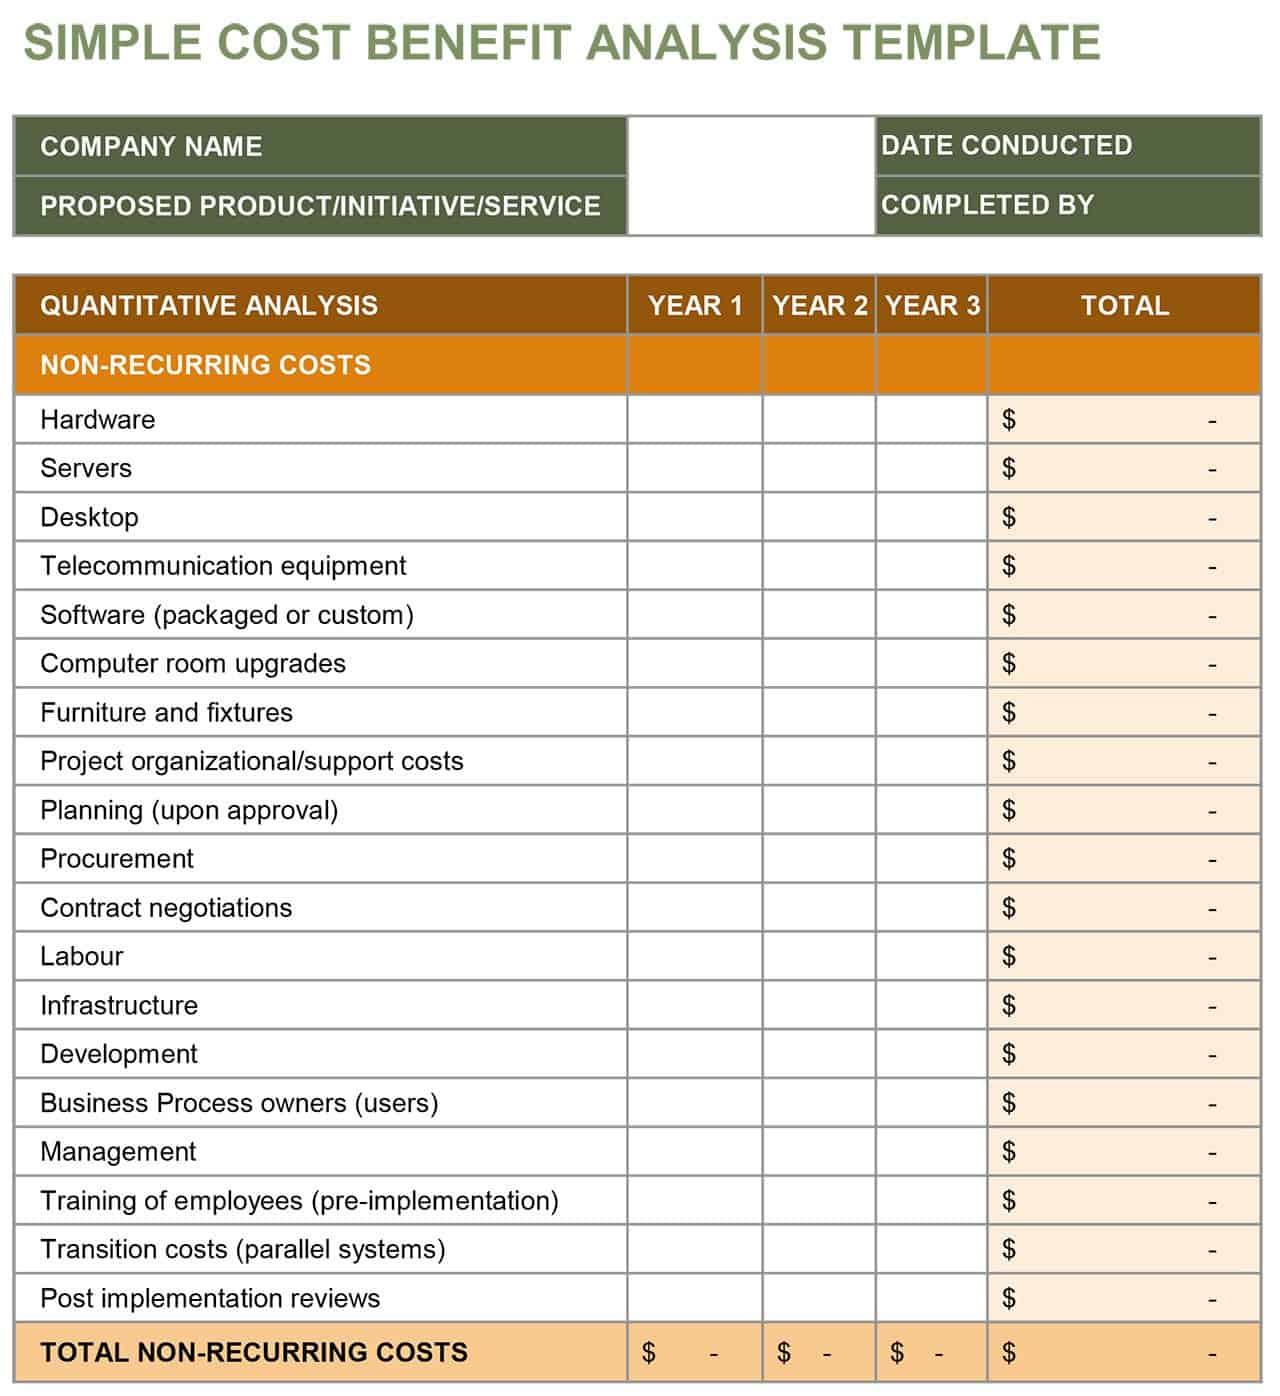 job analysis process example